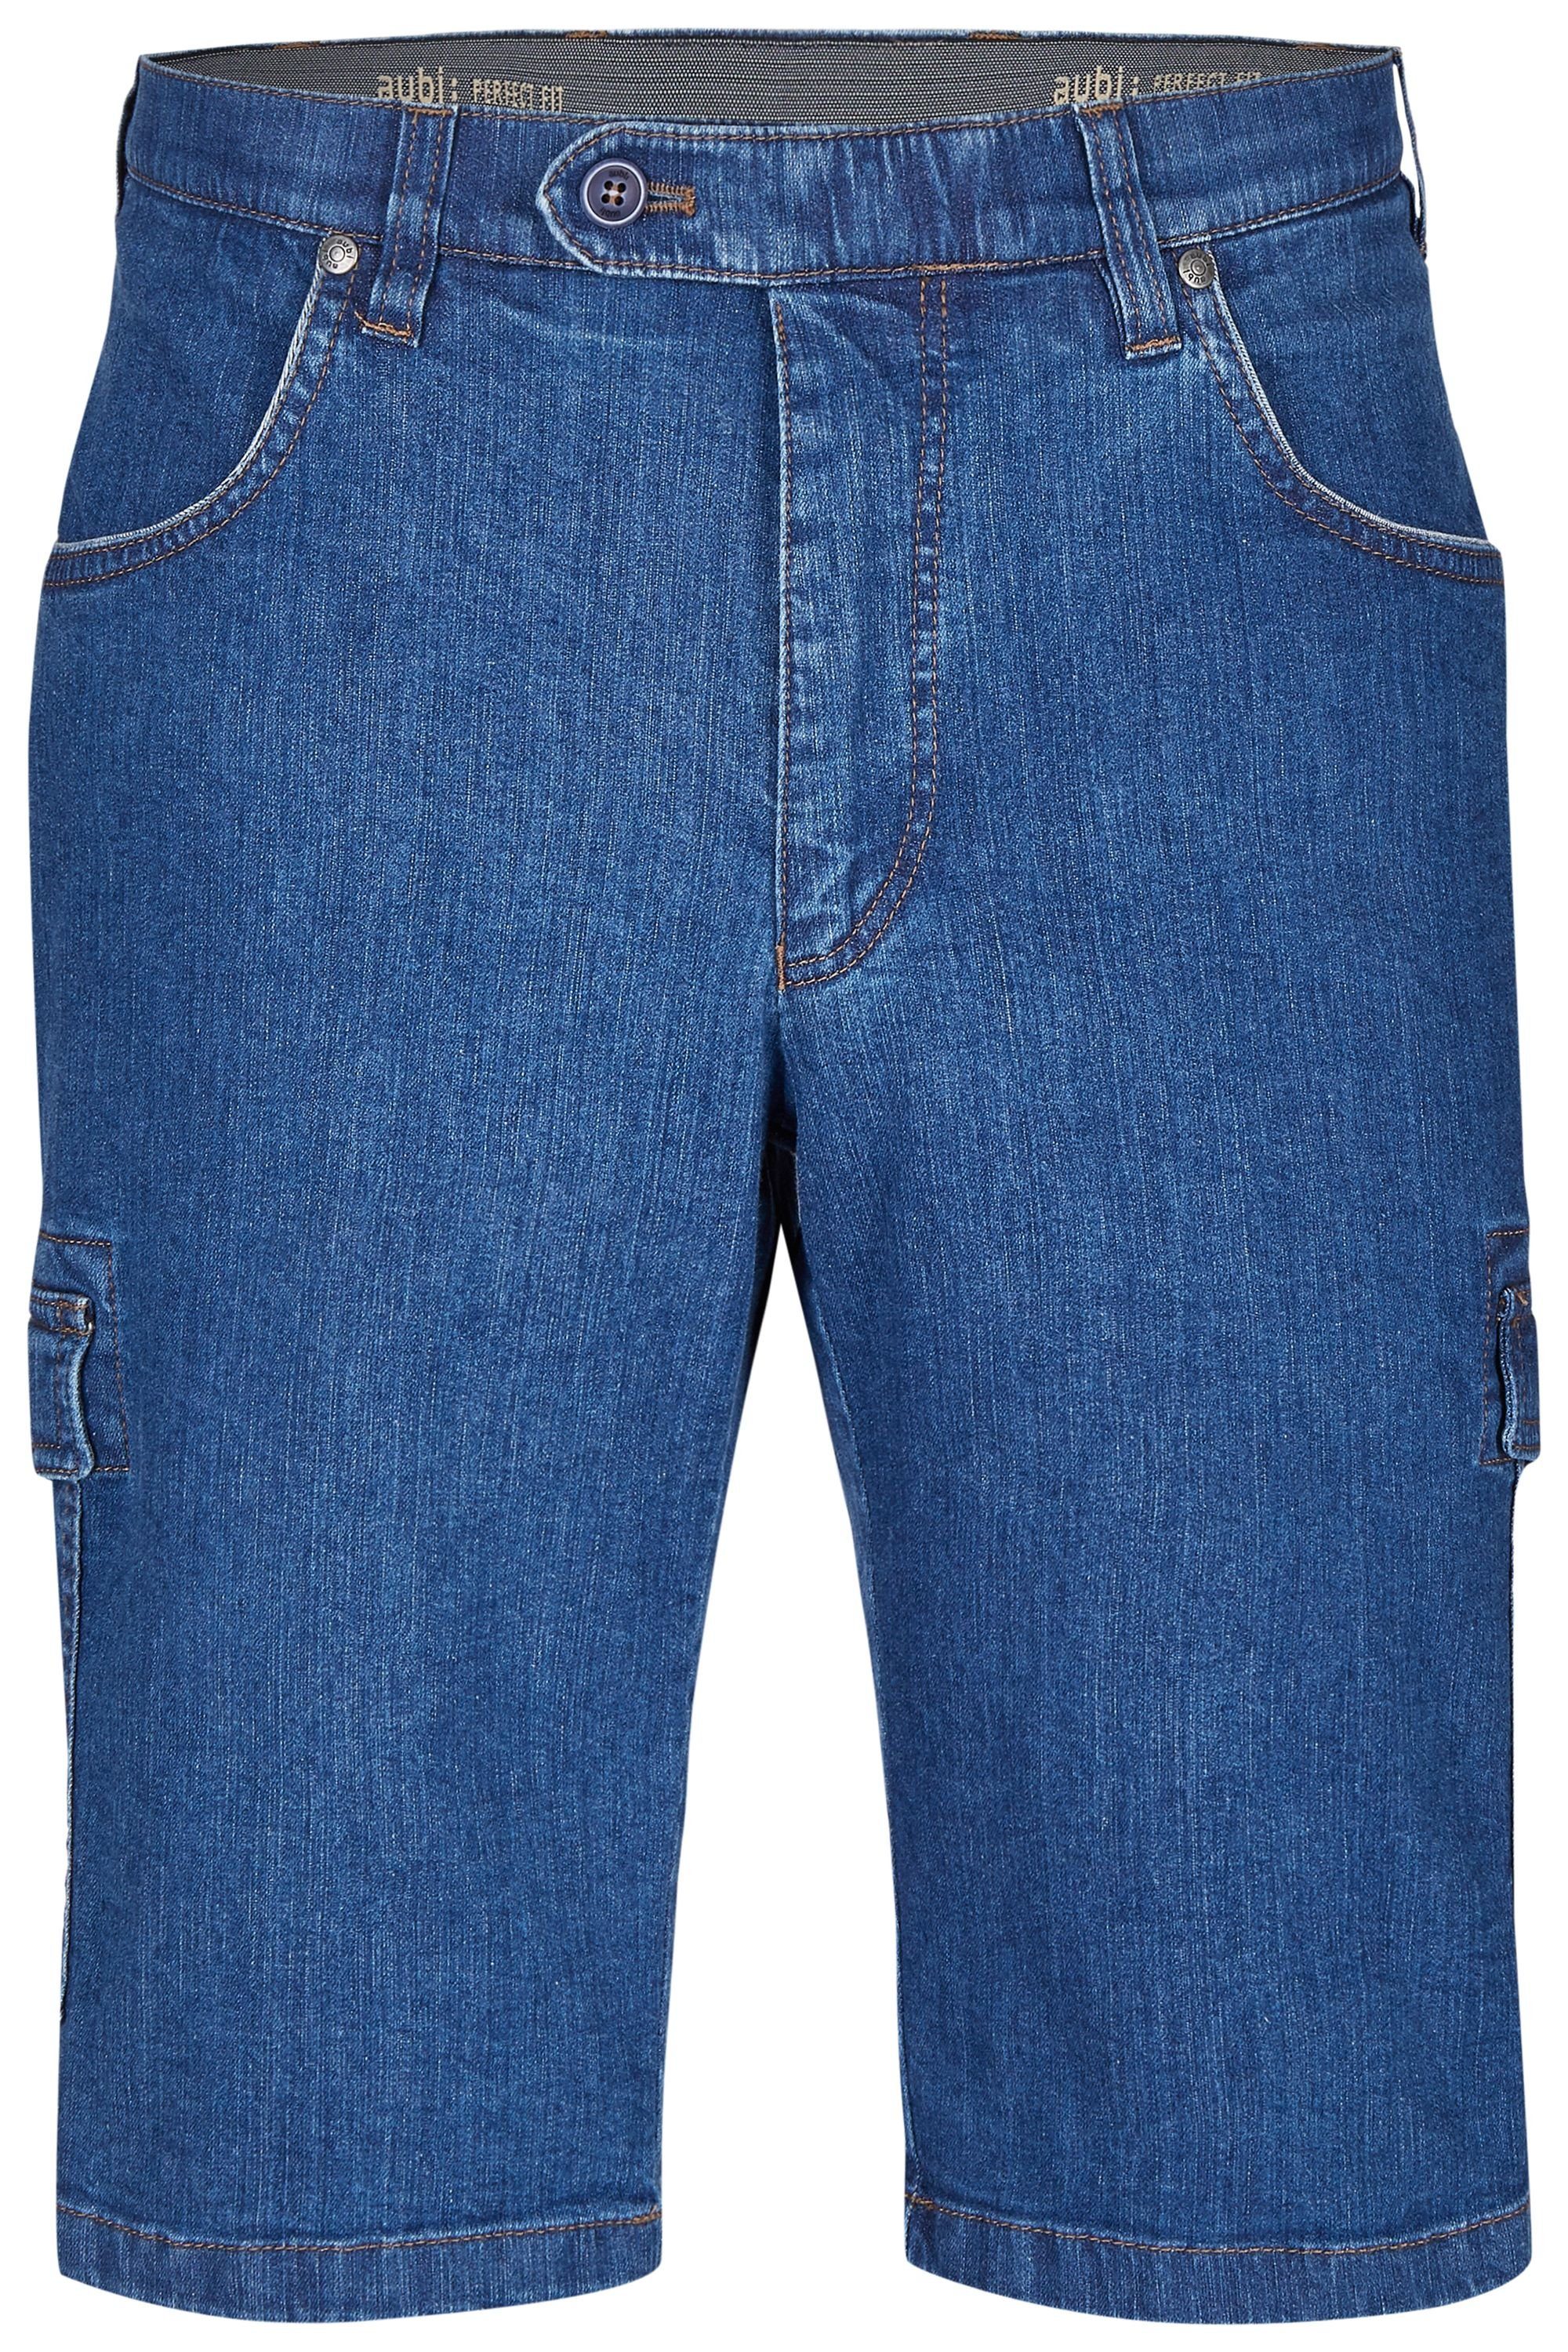 Cargo aus Stretch Sommer (46) aubi: 616 Fit aubi Modell High Perfect Bequeme Jeans Shorts Baumwolle Flex Herren stone Jeans